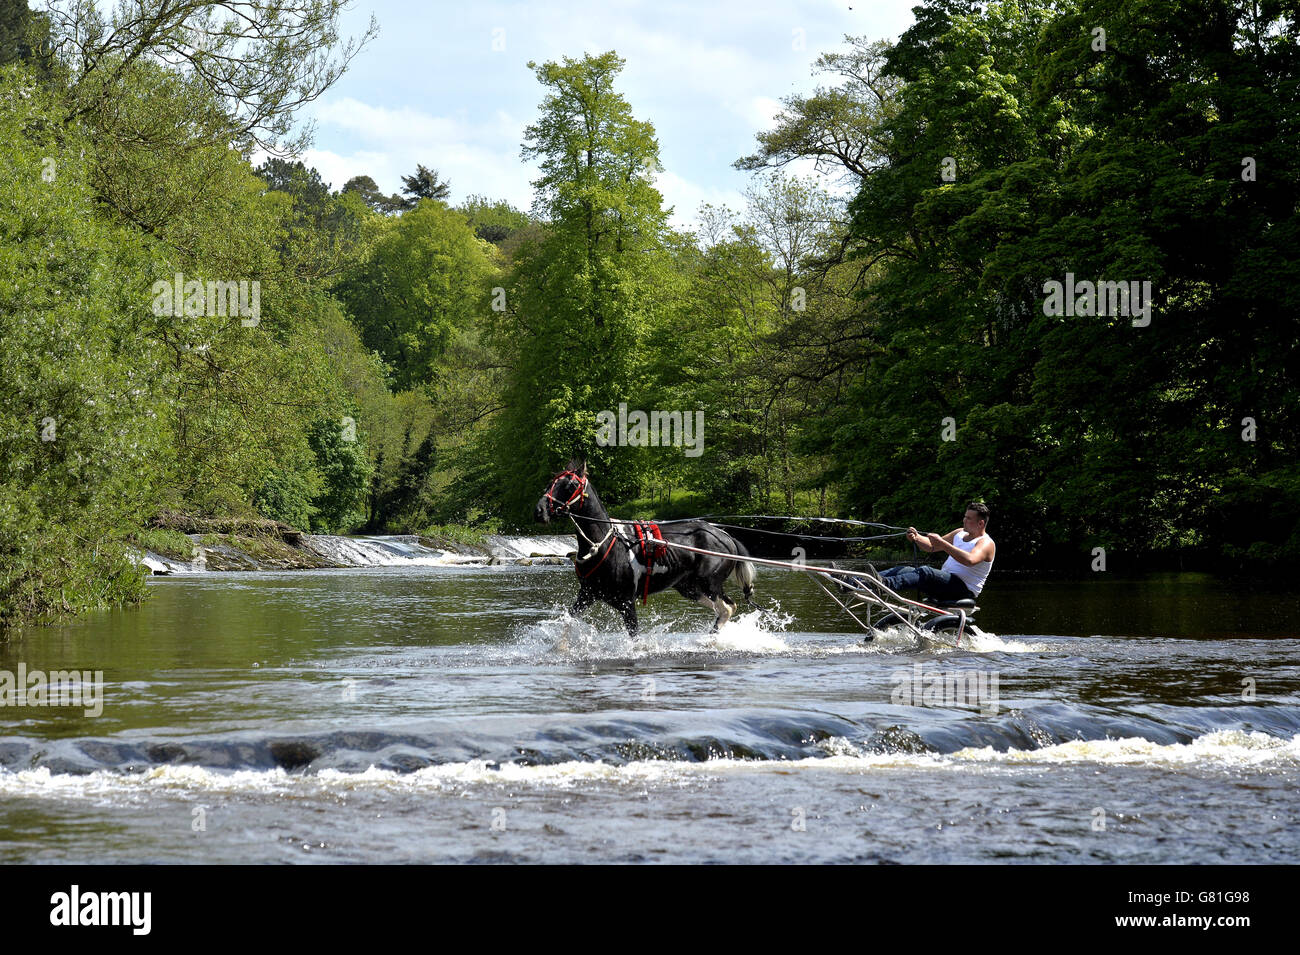 Les membres de la communauté itinérante prennent le cheval et les pièges dans la rivière Eden au début de la foire du cheval Appleby, le rassemblement annuel des gitans et des voyageurs à Appleby, Cumbria. Banque D'Images